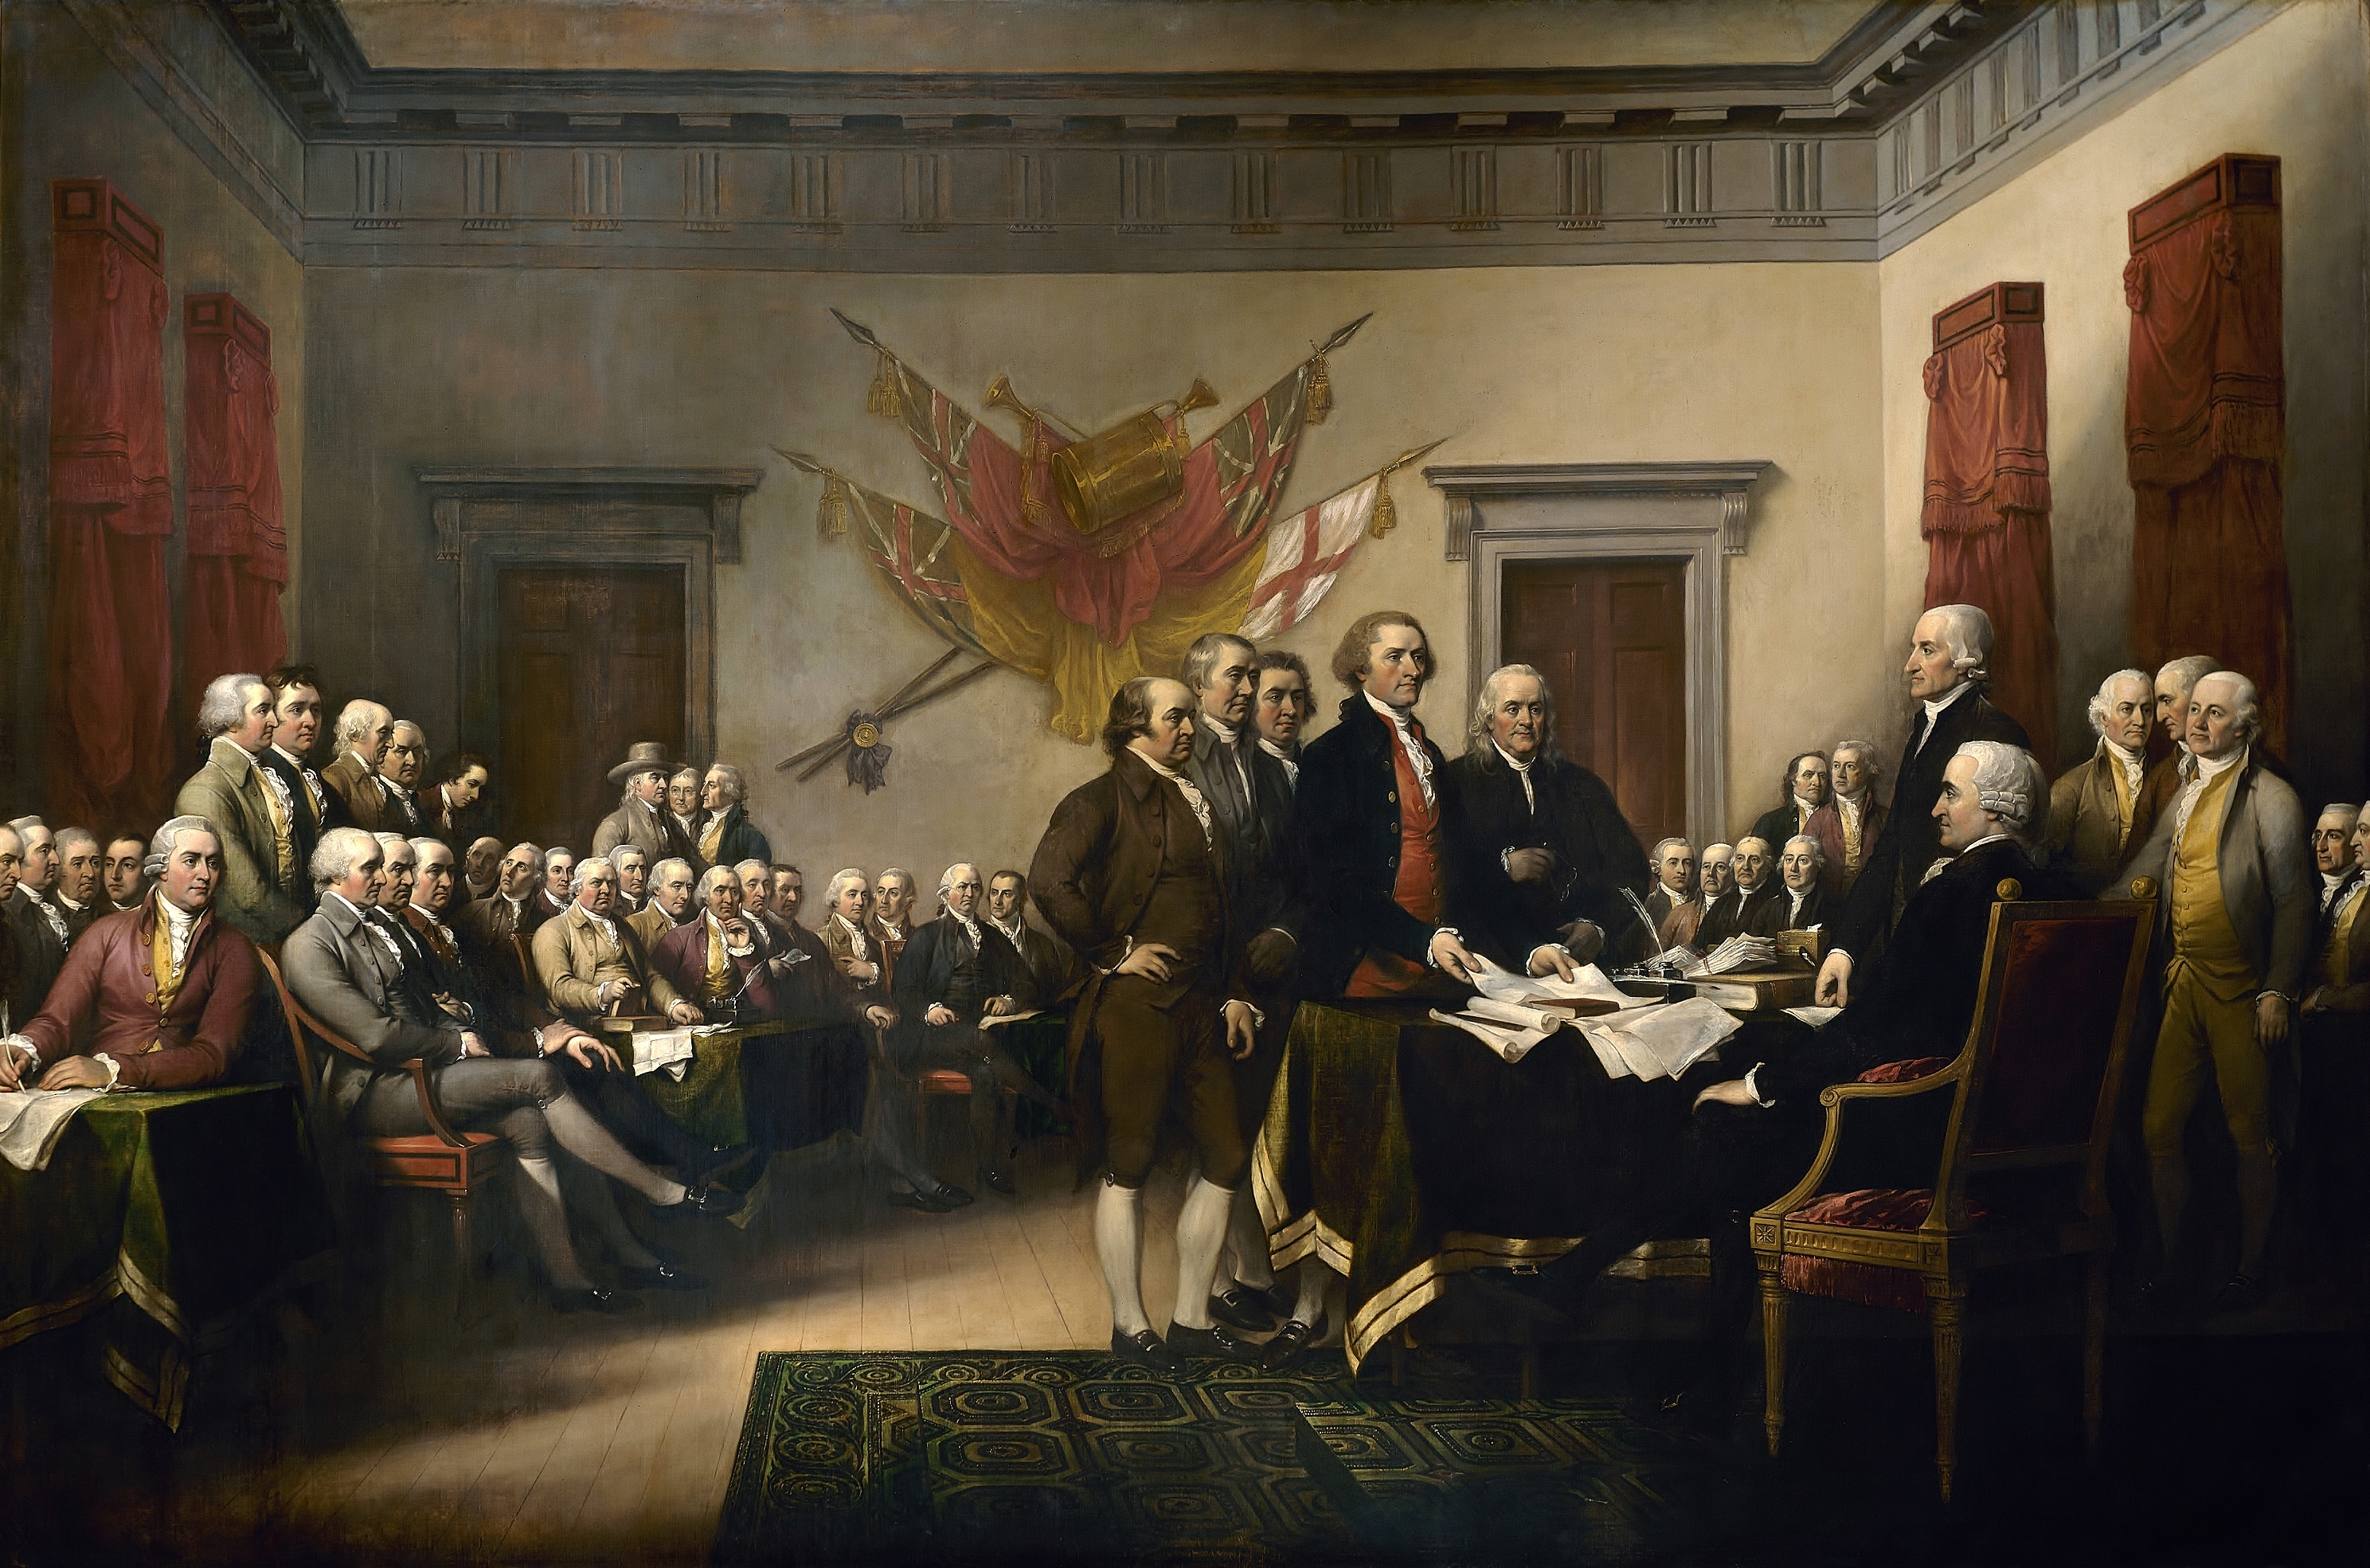 Die Unabhängigkeitserklärung by John Trumbull - 1818 - 3,7 m × 5,5 m Das Kapitol der Vereinigten Staaten